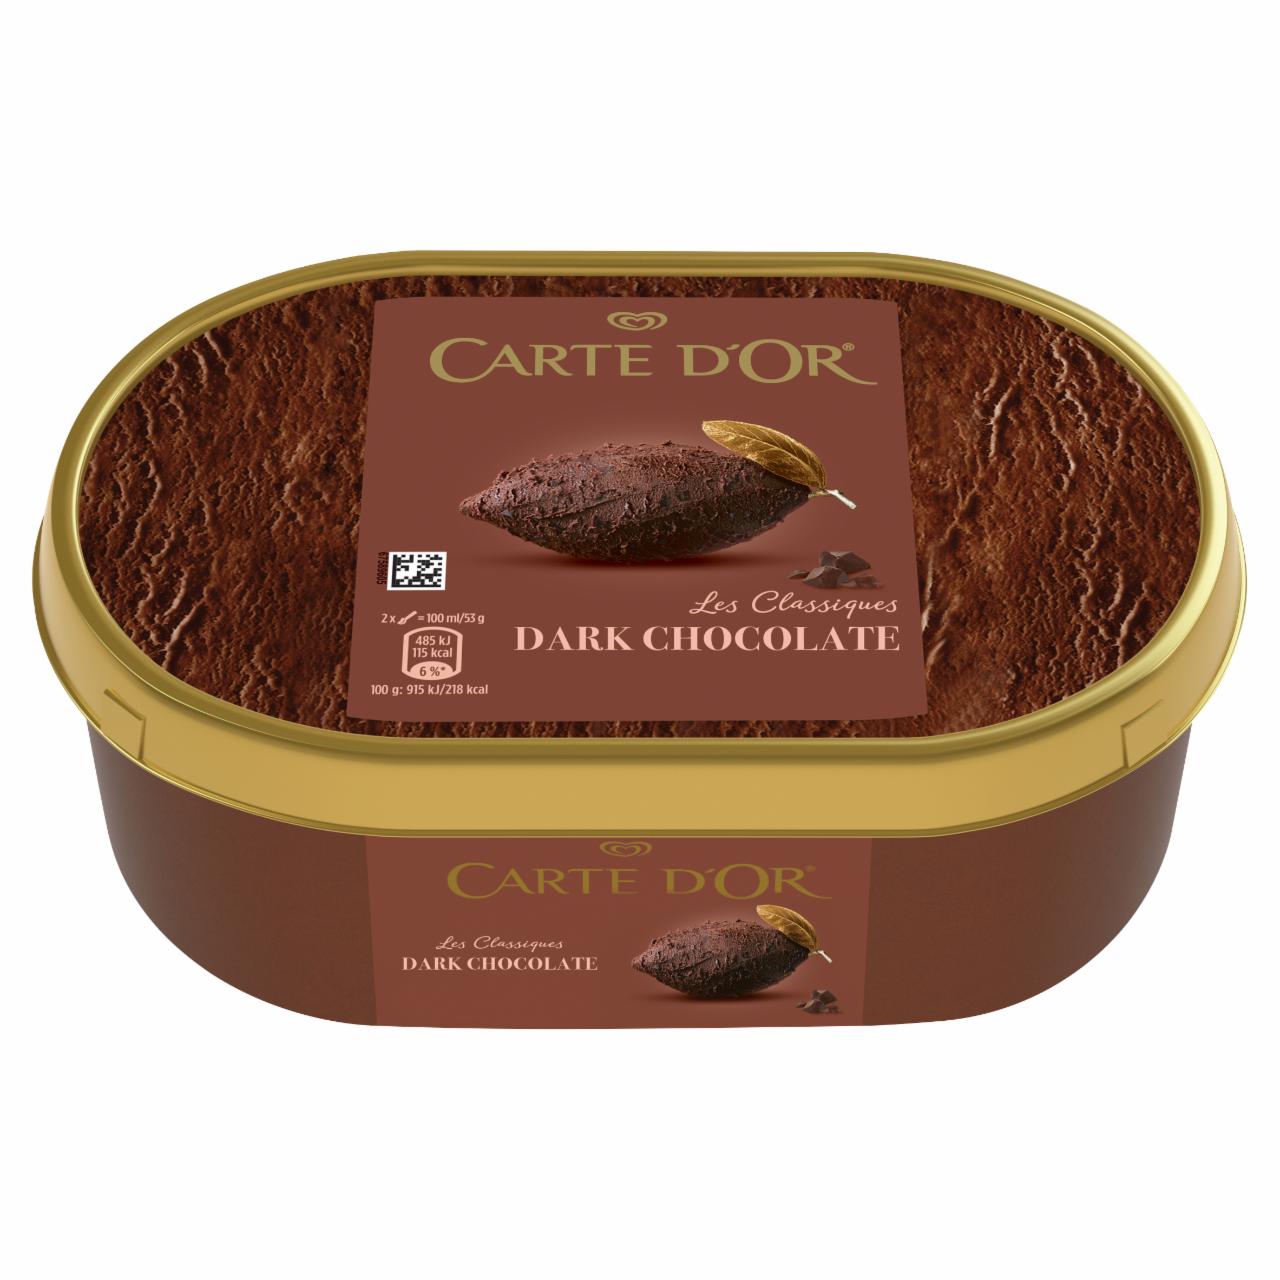 Képek - Carte D'Or csokoládés jégkrém étcsokoládé darabokkal 500 g